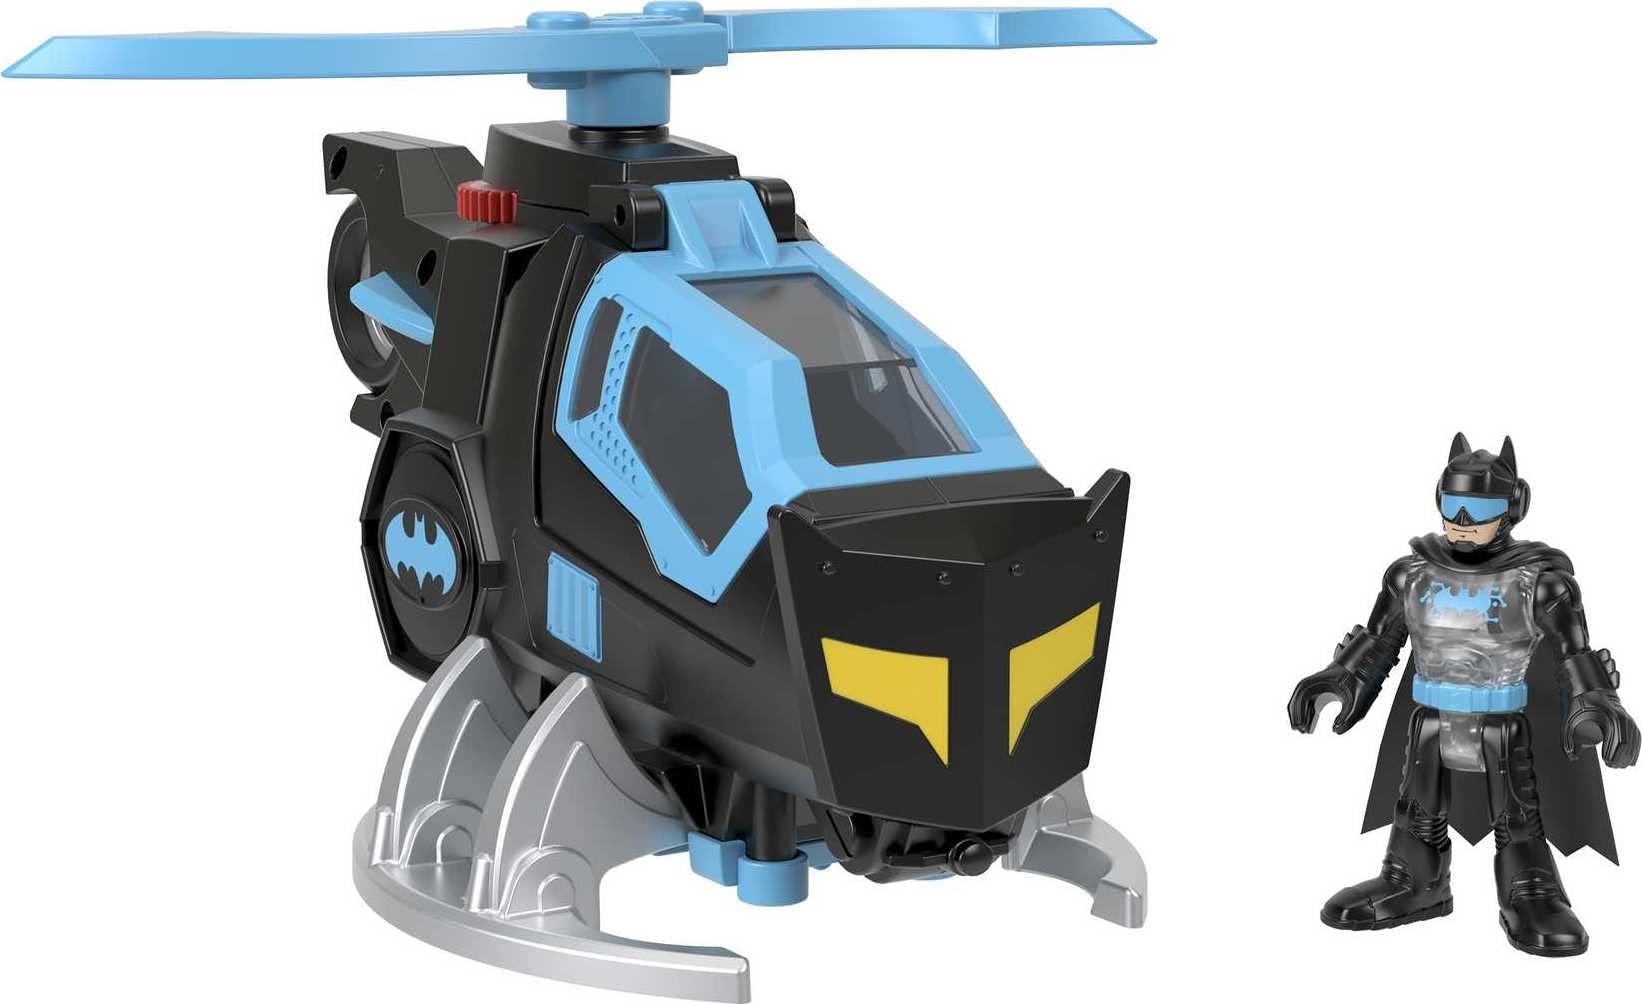 Fisher-Price Imaginext GYC72 - DC Super Friends Batcopter, 1 Spielzeug-Helikopter mit 1 Batman-Figur, für Kinder von 3 bis 8 Jahren